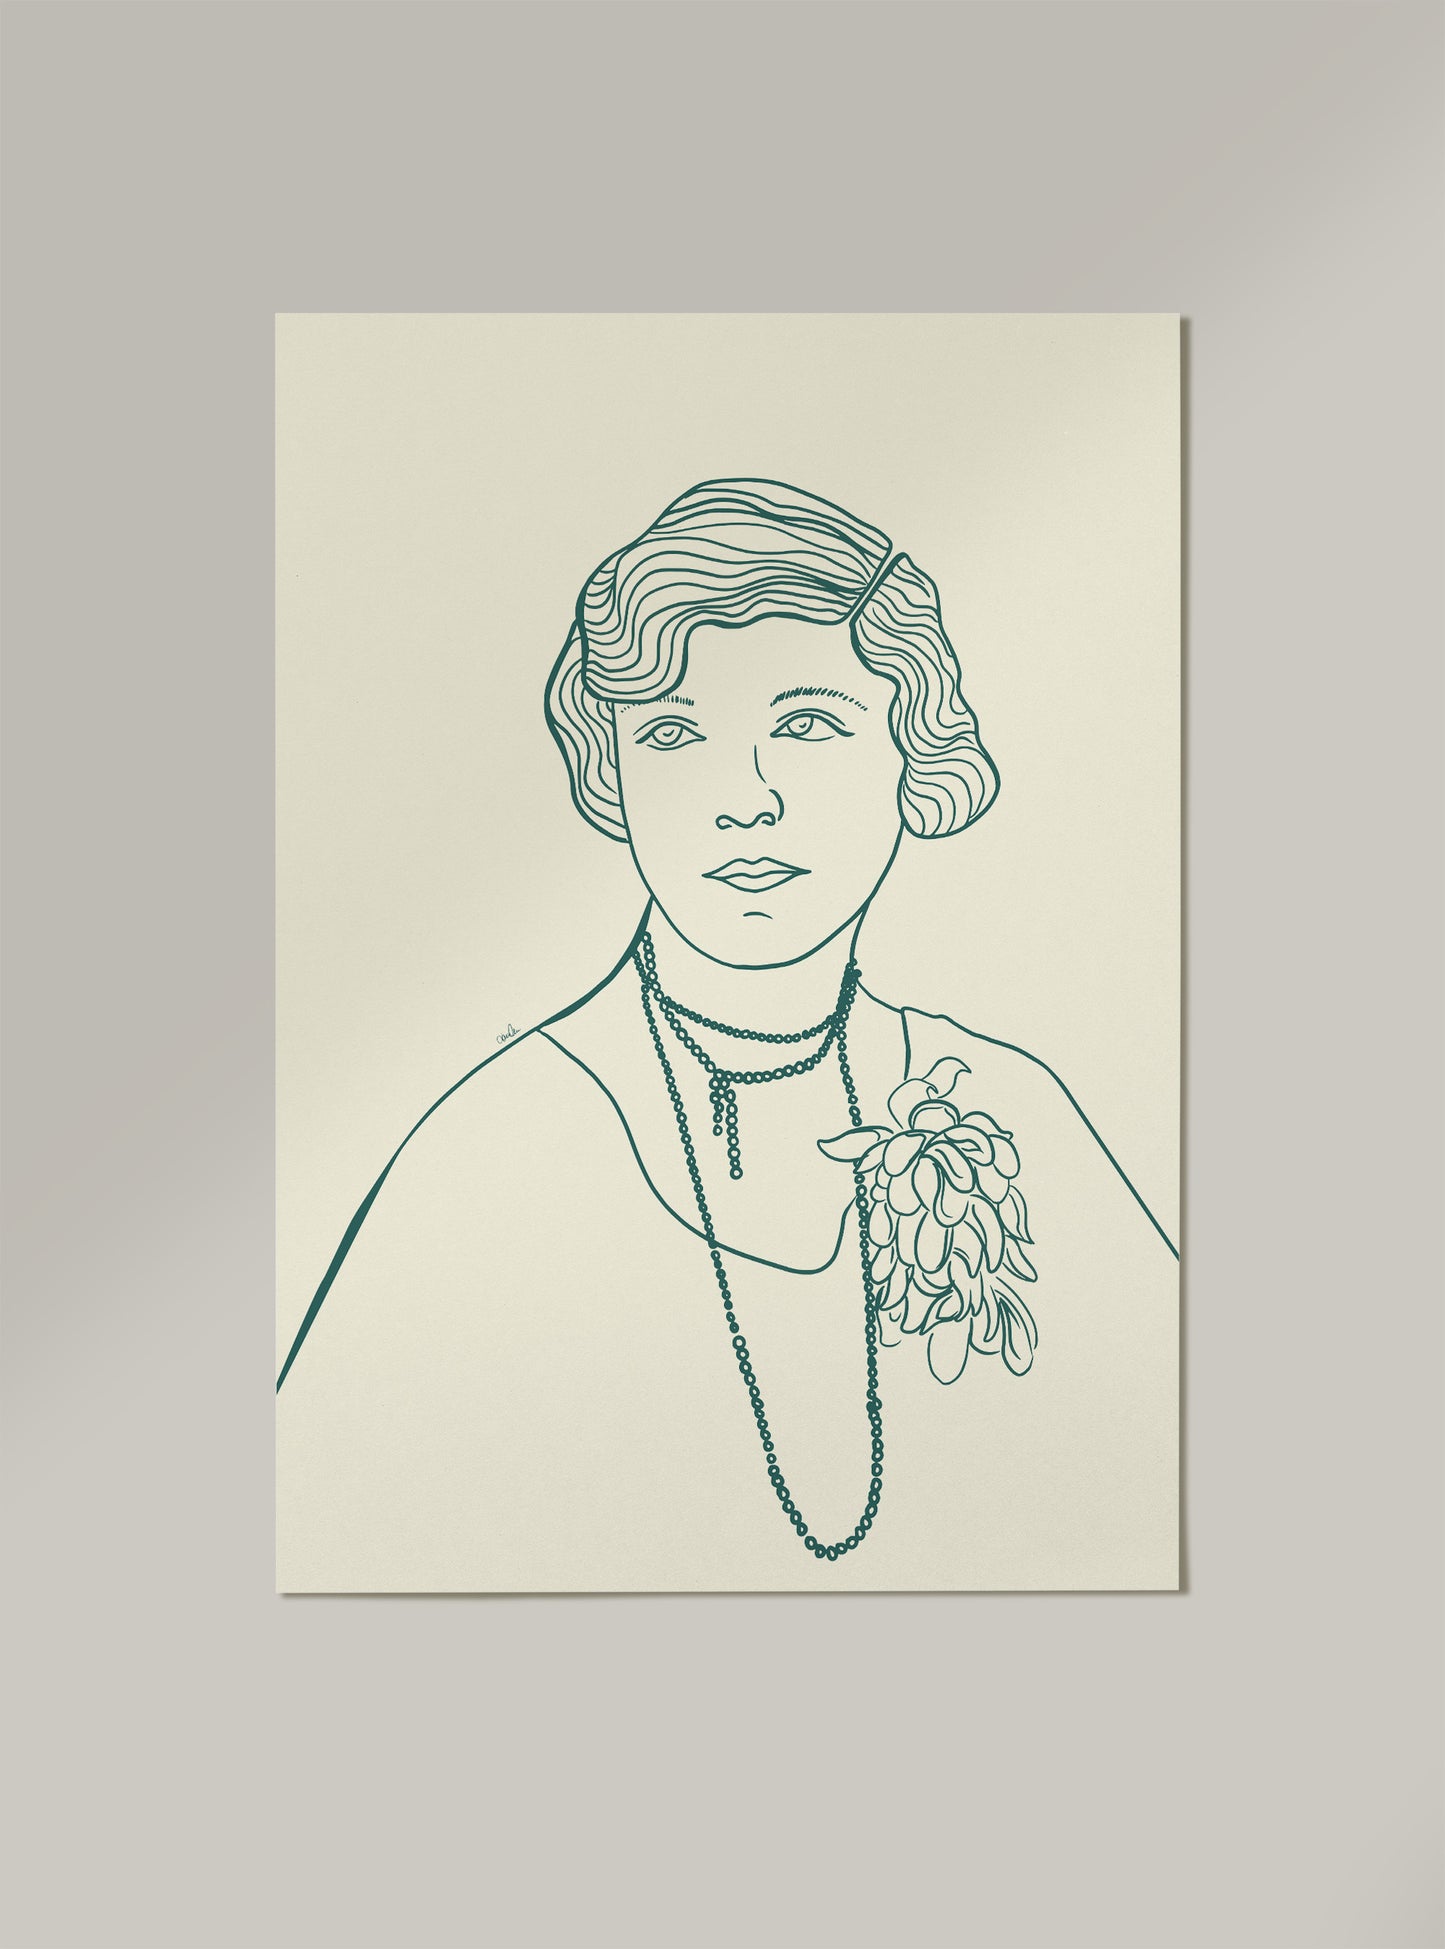 Strektegning av vintage kvinne i grønne toner. Poster